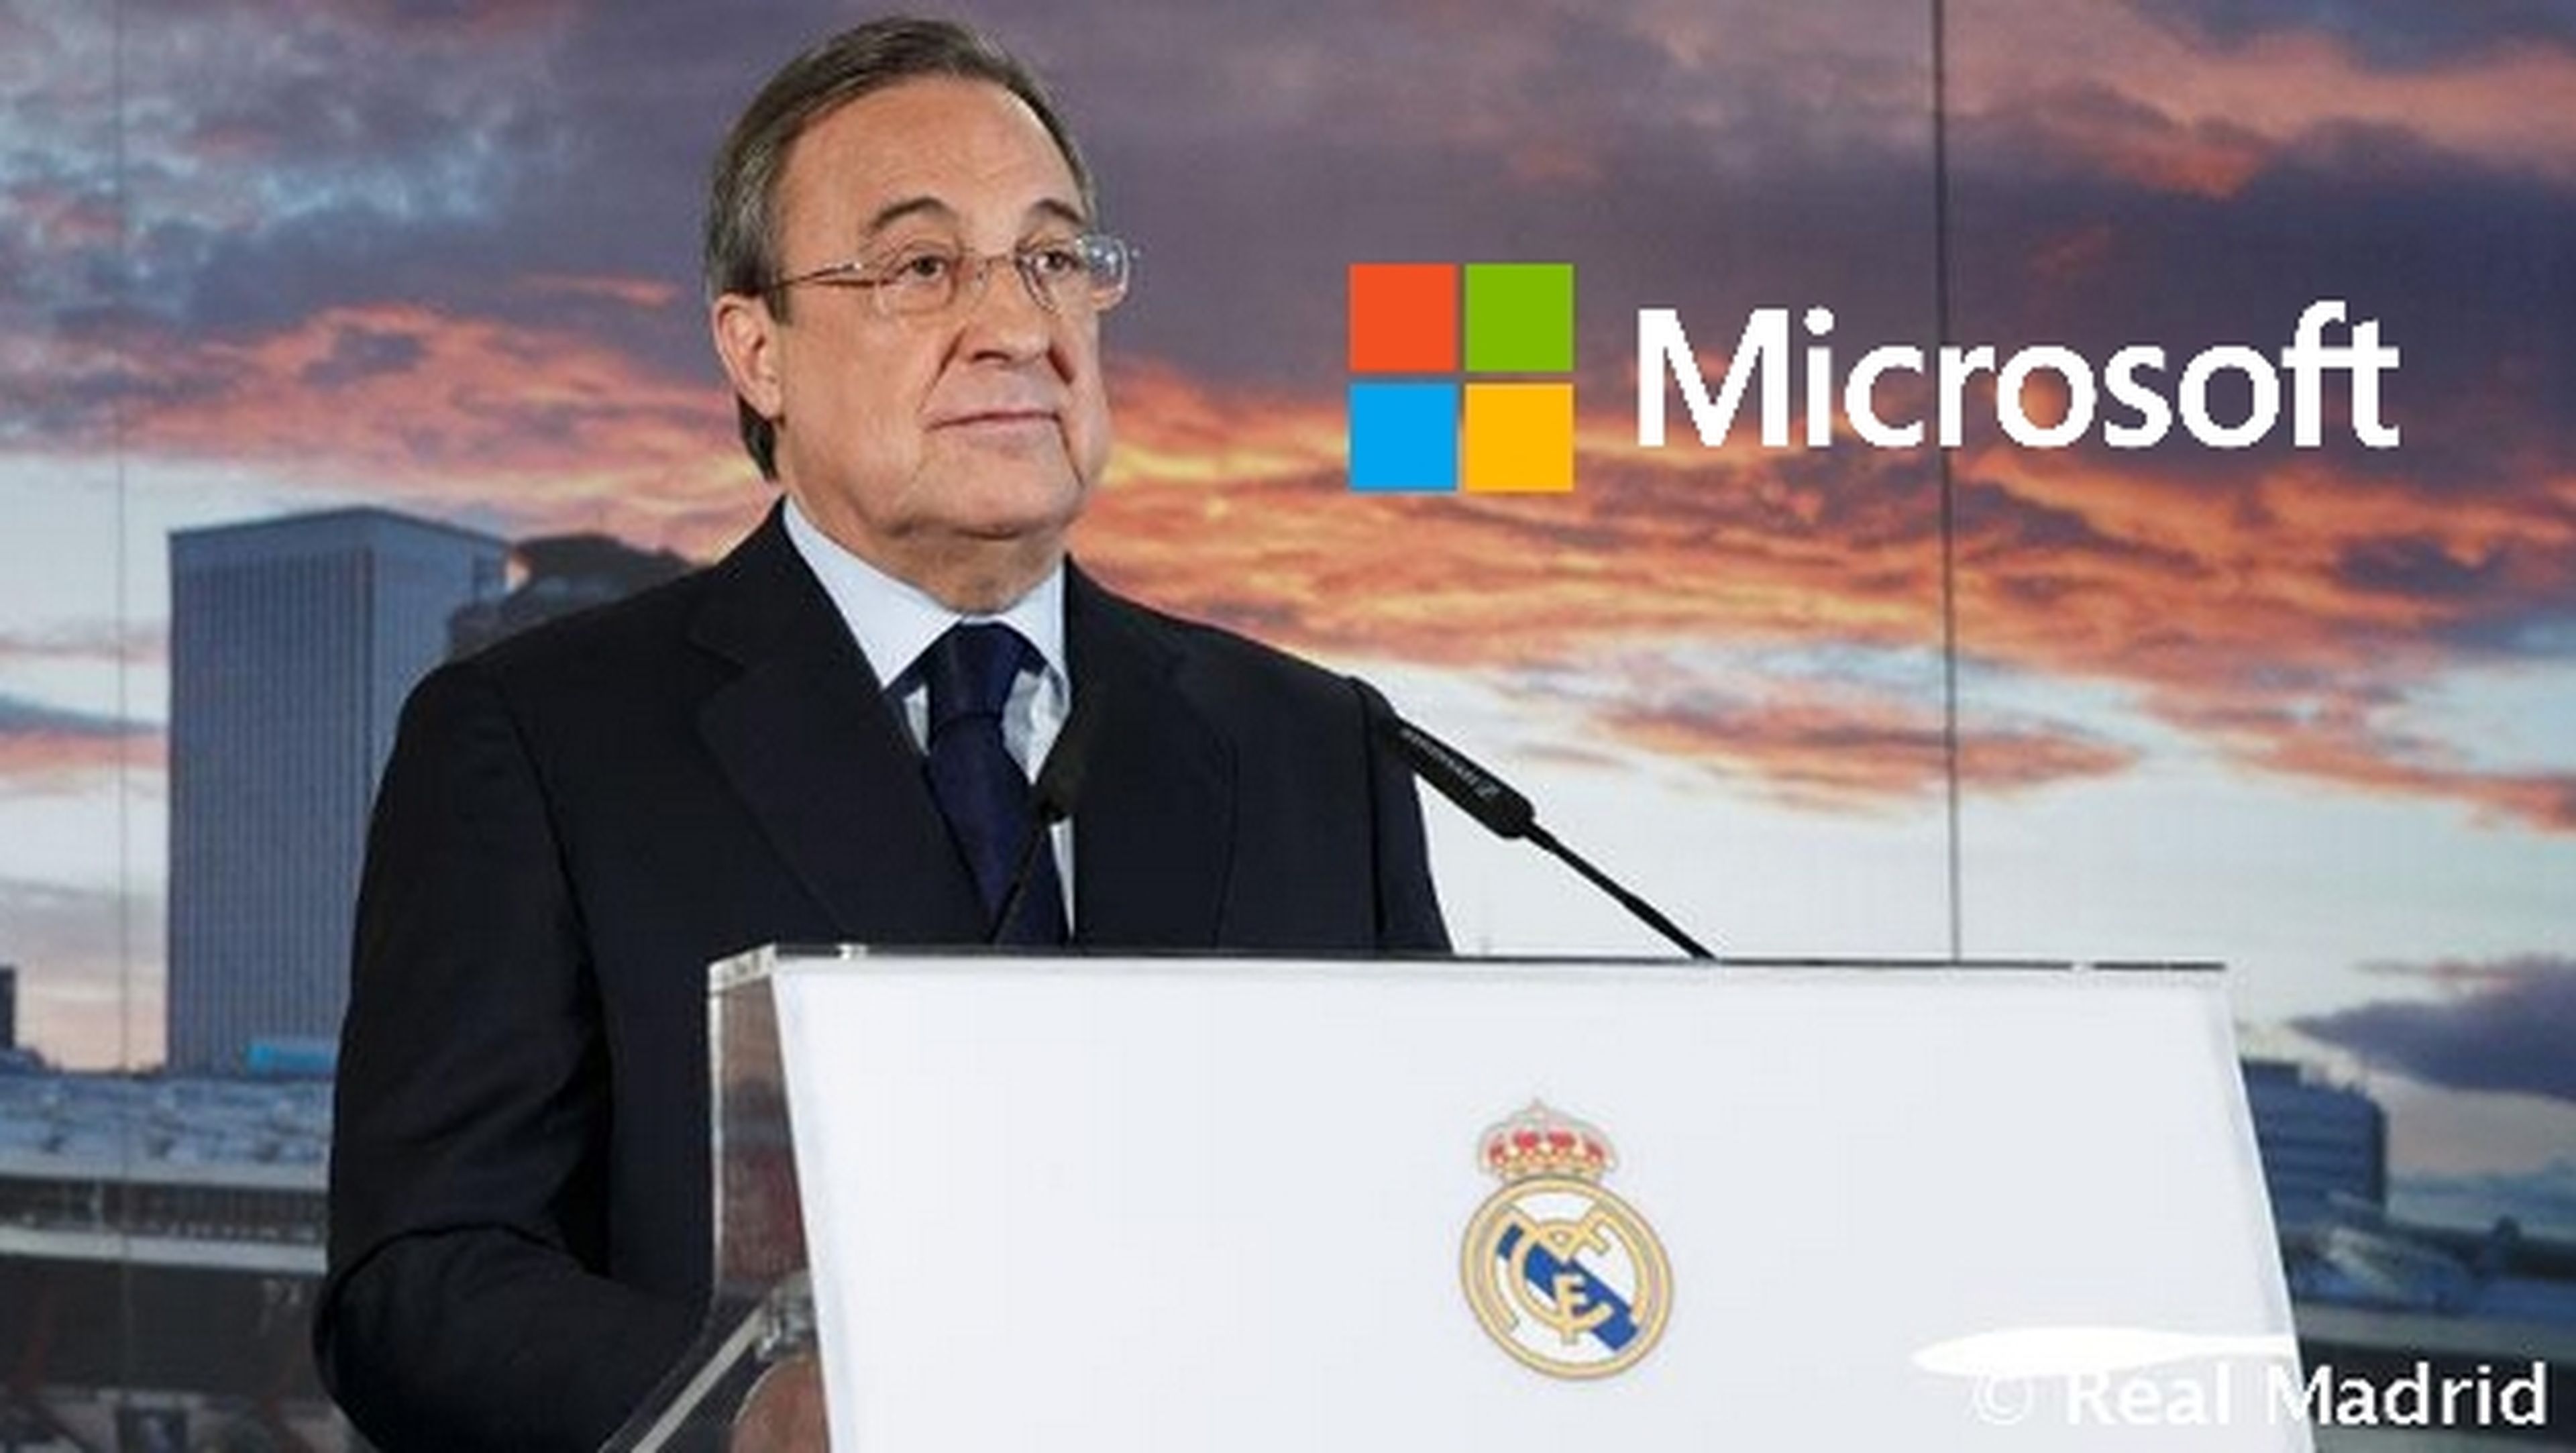 Microsoft patrocinará al Real Madrid con 24 millones de € durante cuatro años.